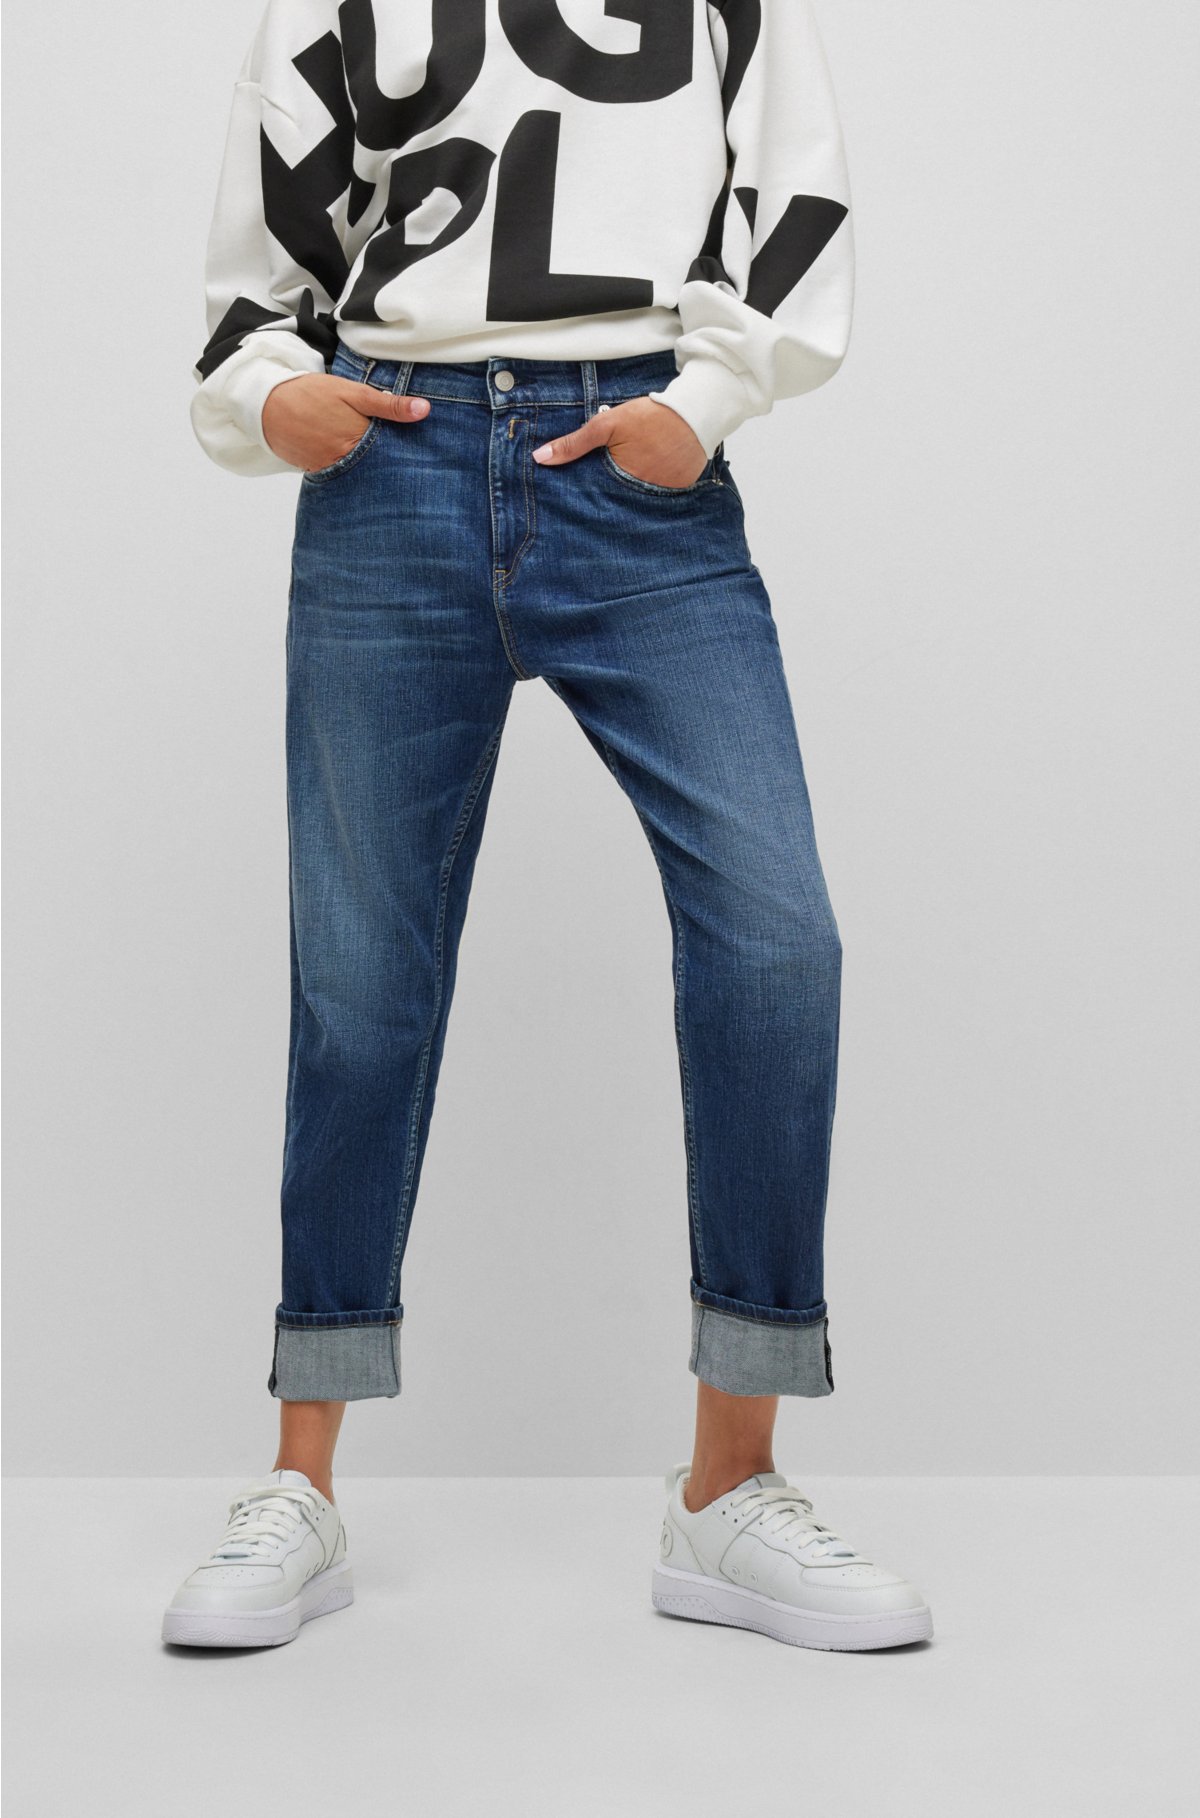 Kenmerkend kanaal Clancy HUGO - HUGO | REPLAY regular-fit jeans van donkerblauw stretchdenim